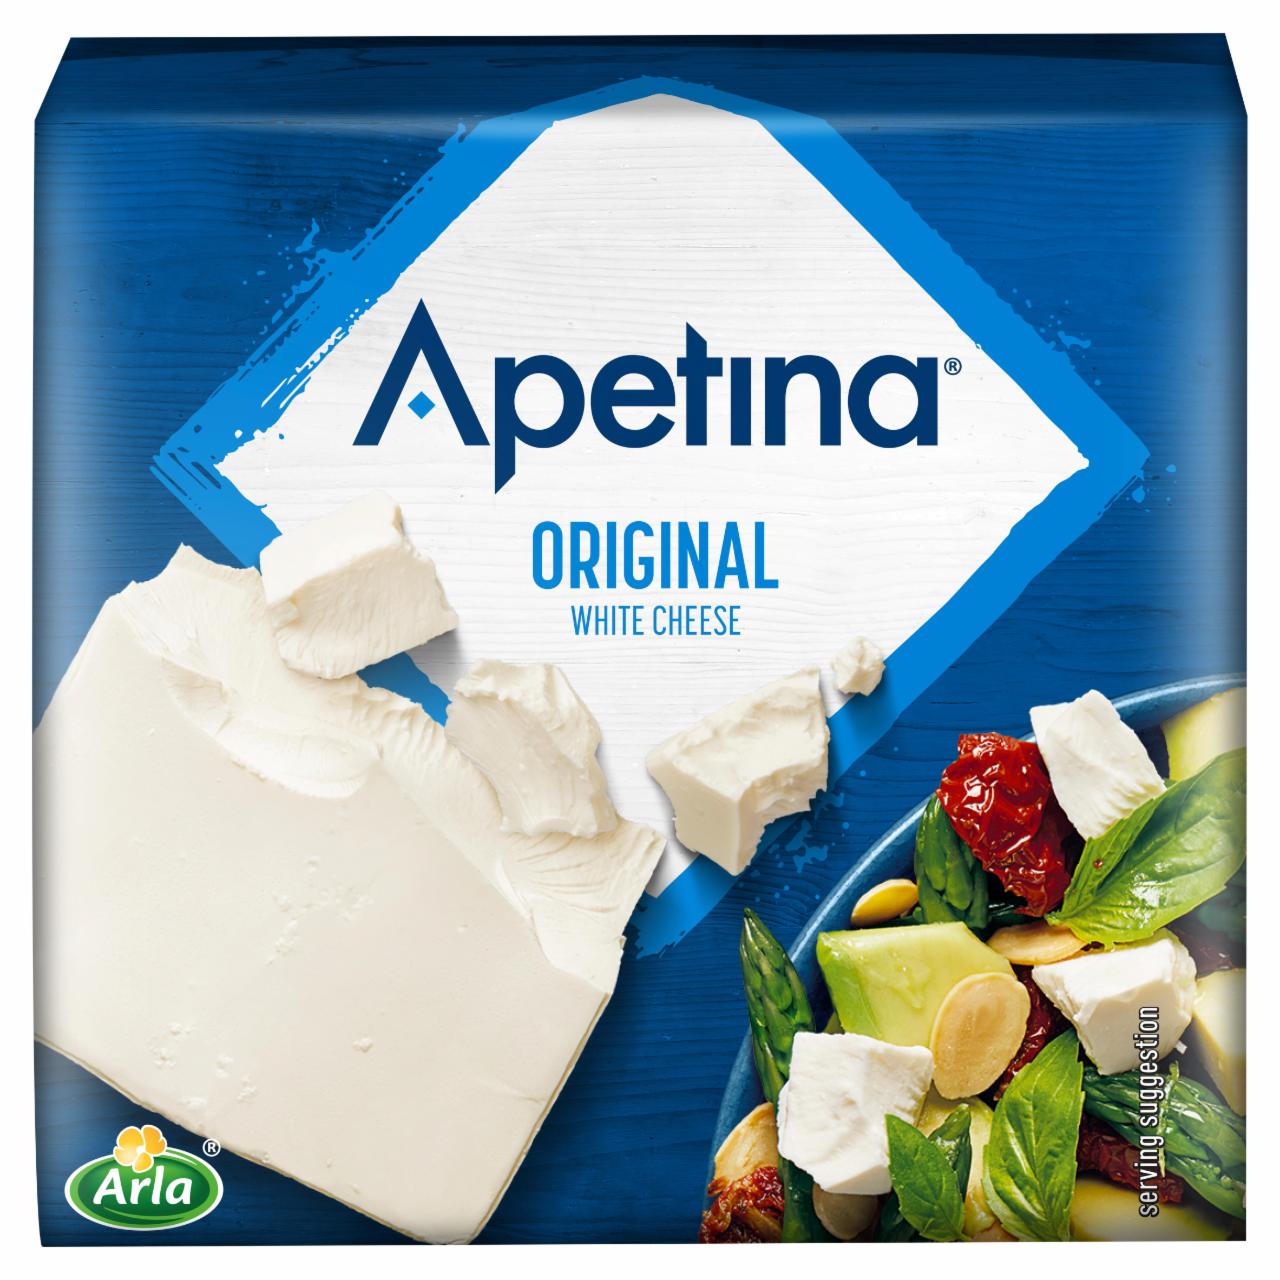 Képek - Apetina krémfehér lágy sajt 500 g